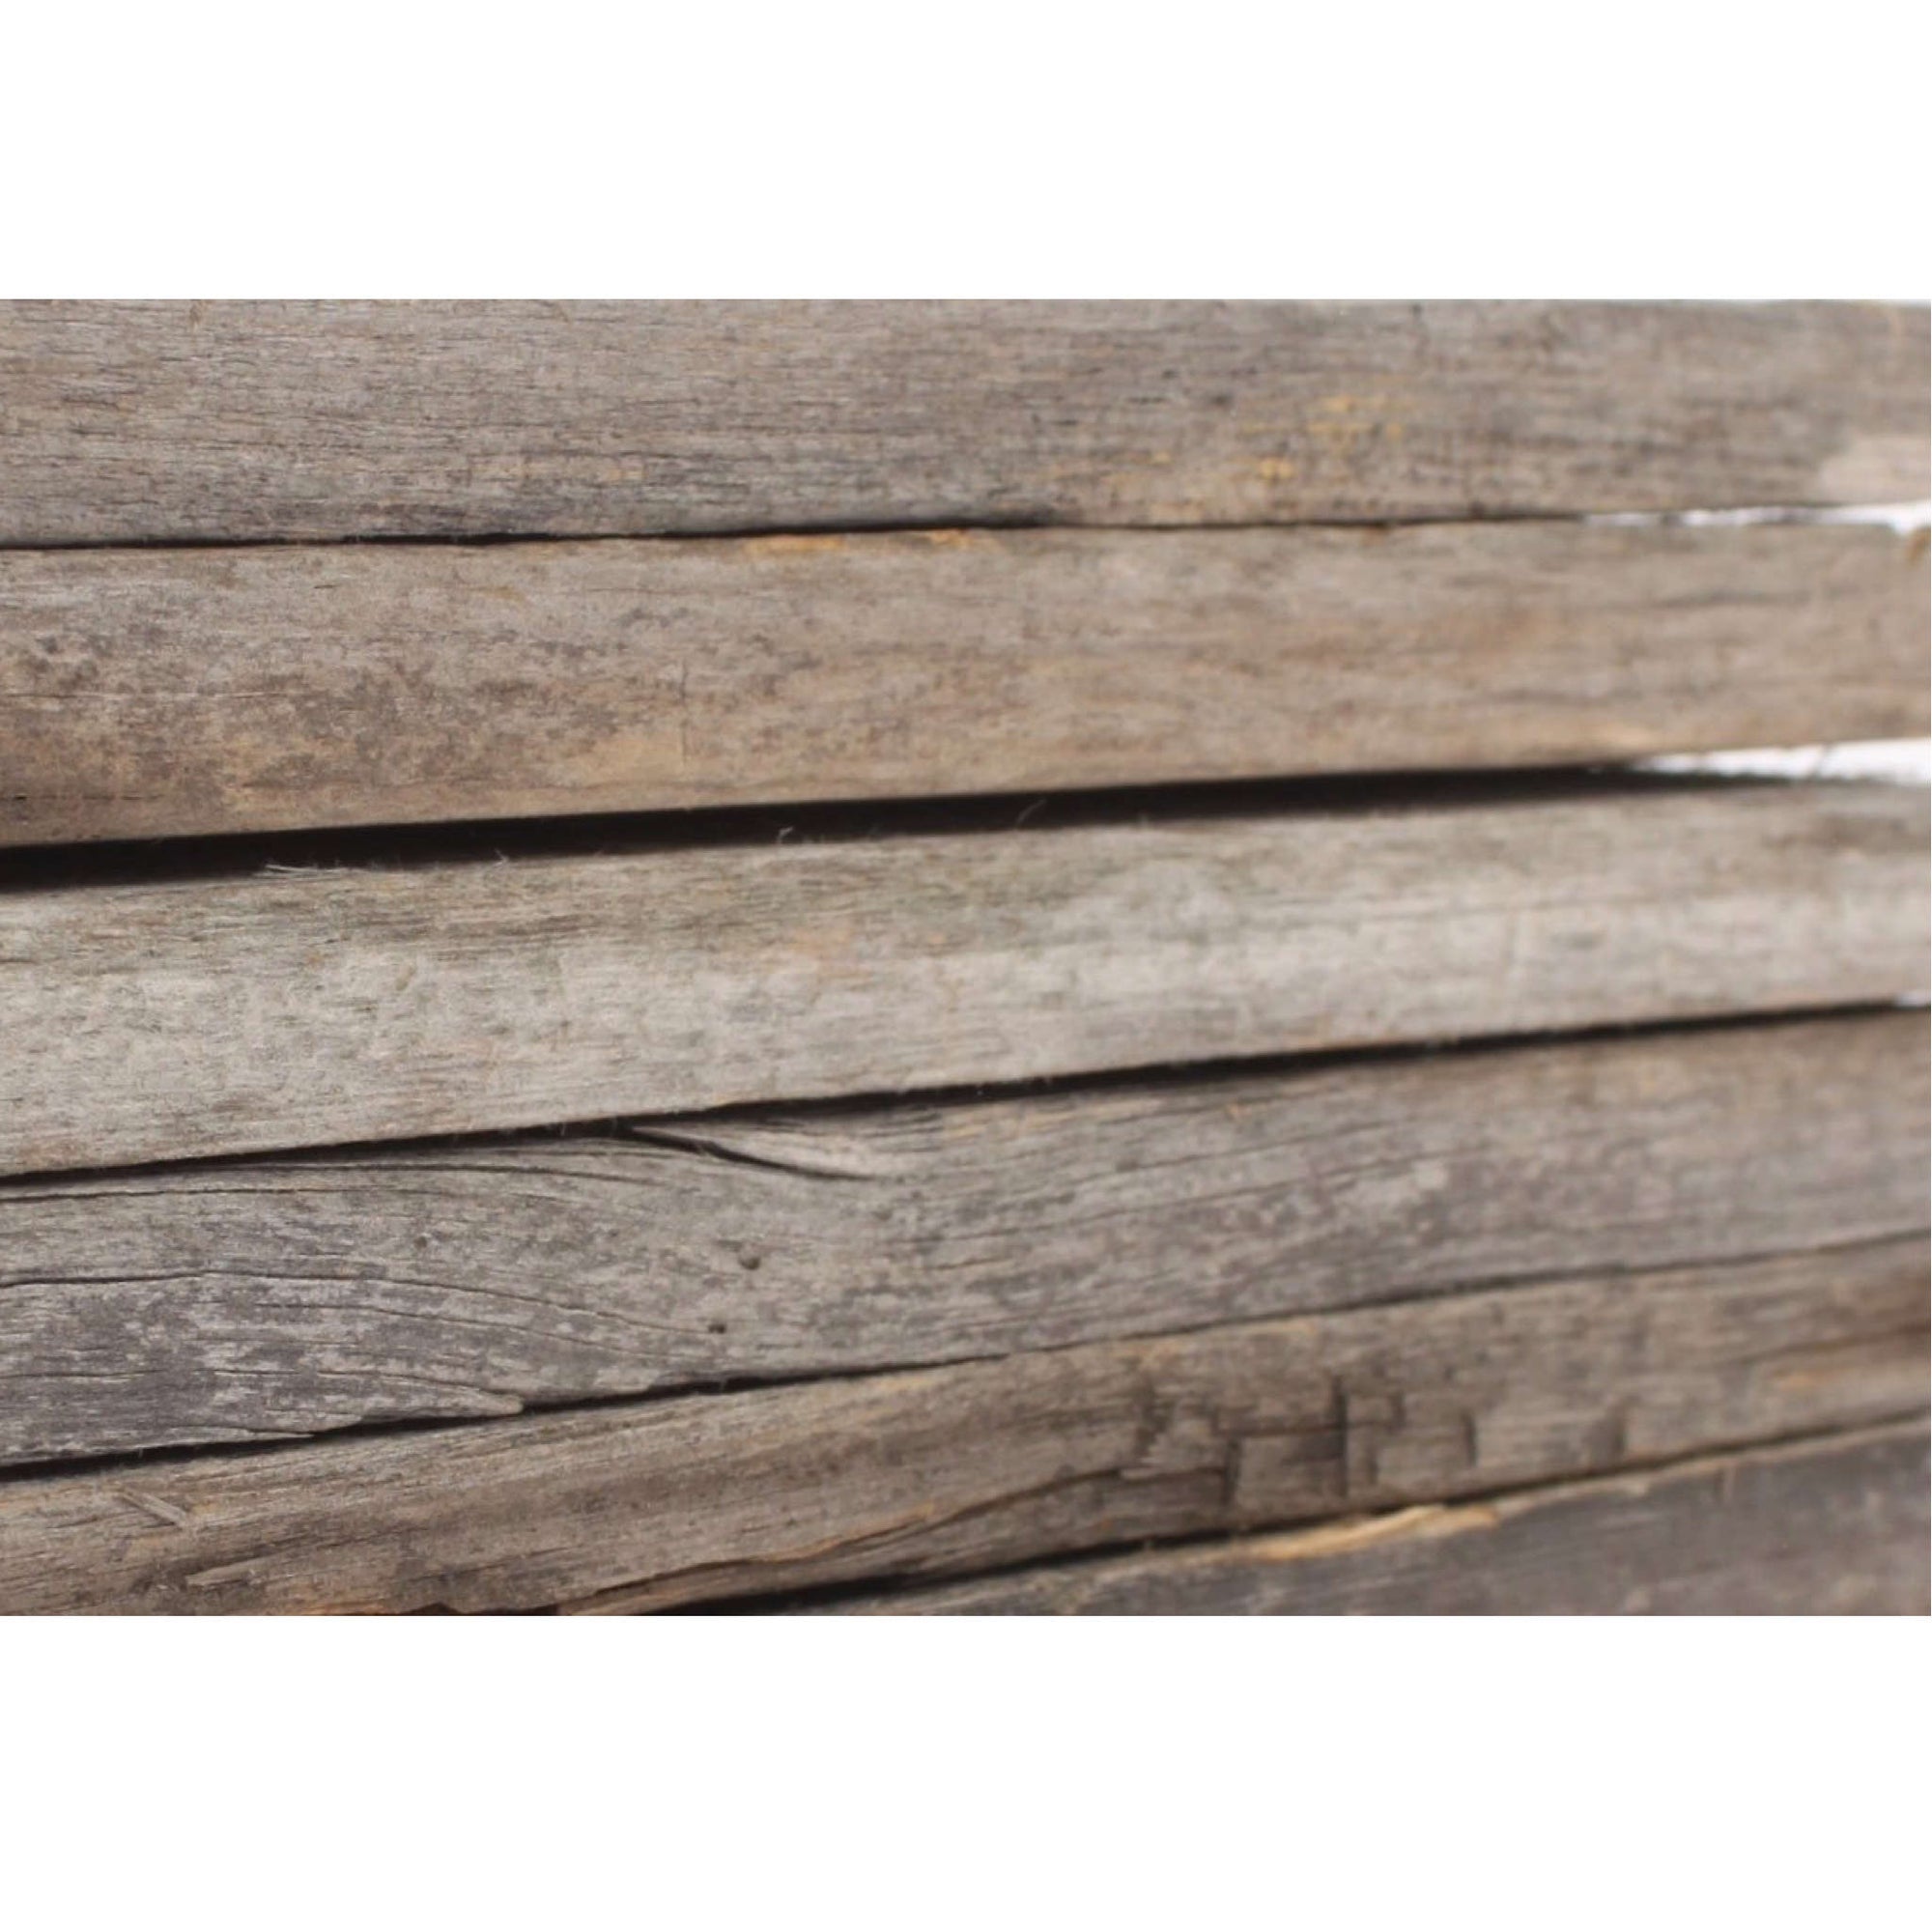 BarnwoodUSA Bundle Wood Plank (Set of 6), Size: 12 H x 3.5 W, White